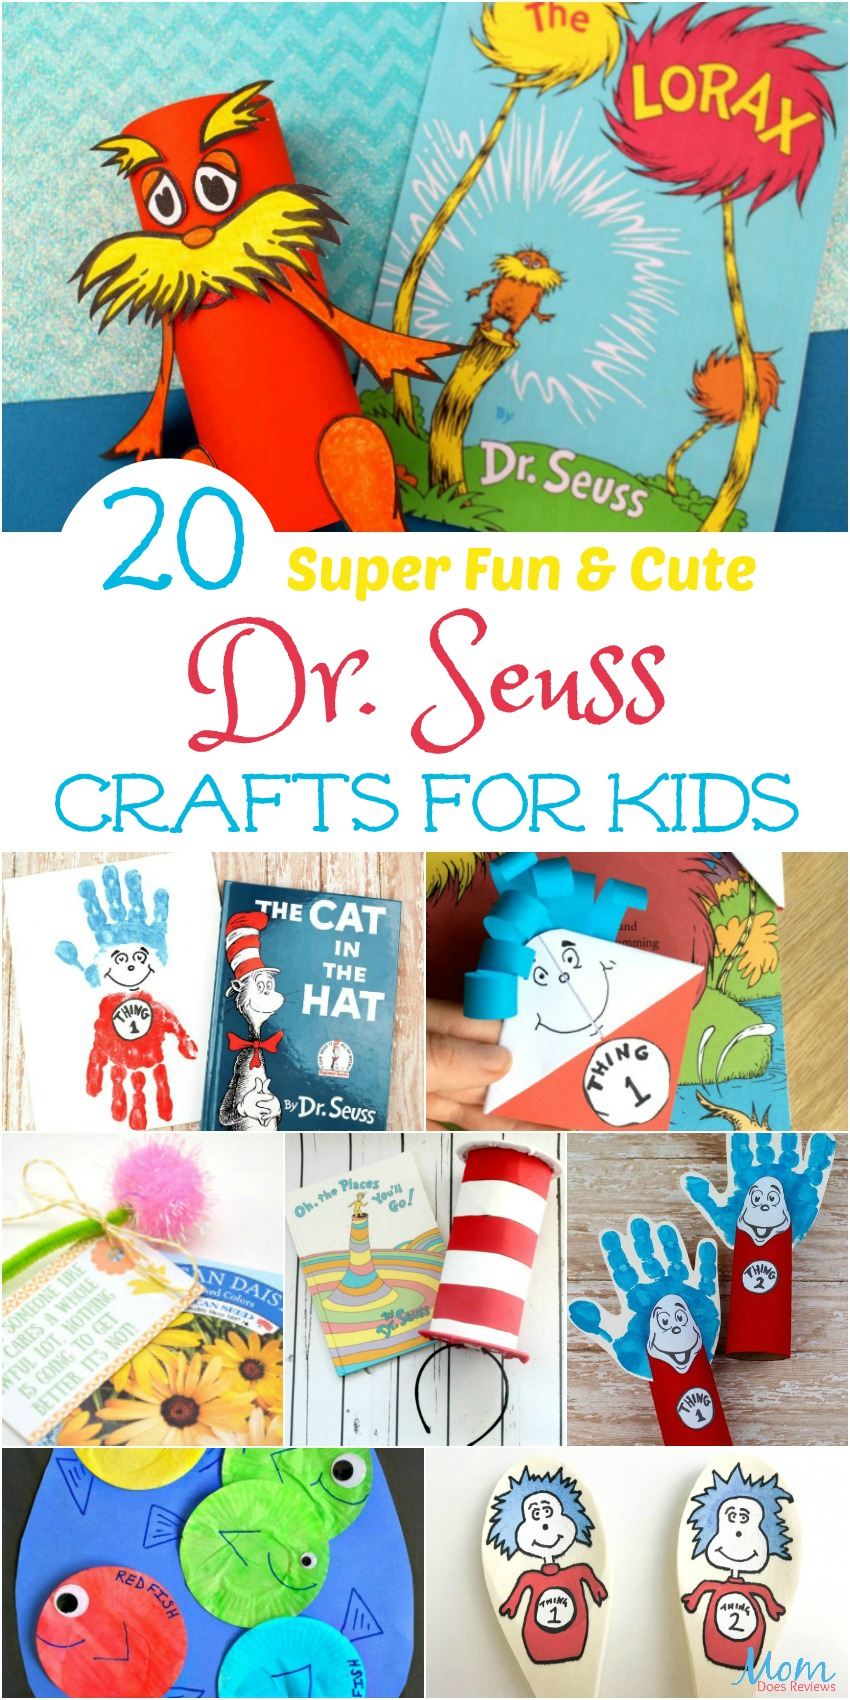 20 Super Fun & Cute Dr. Seuss Crafts for Kids